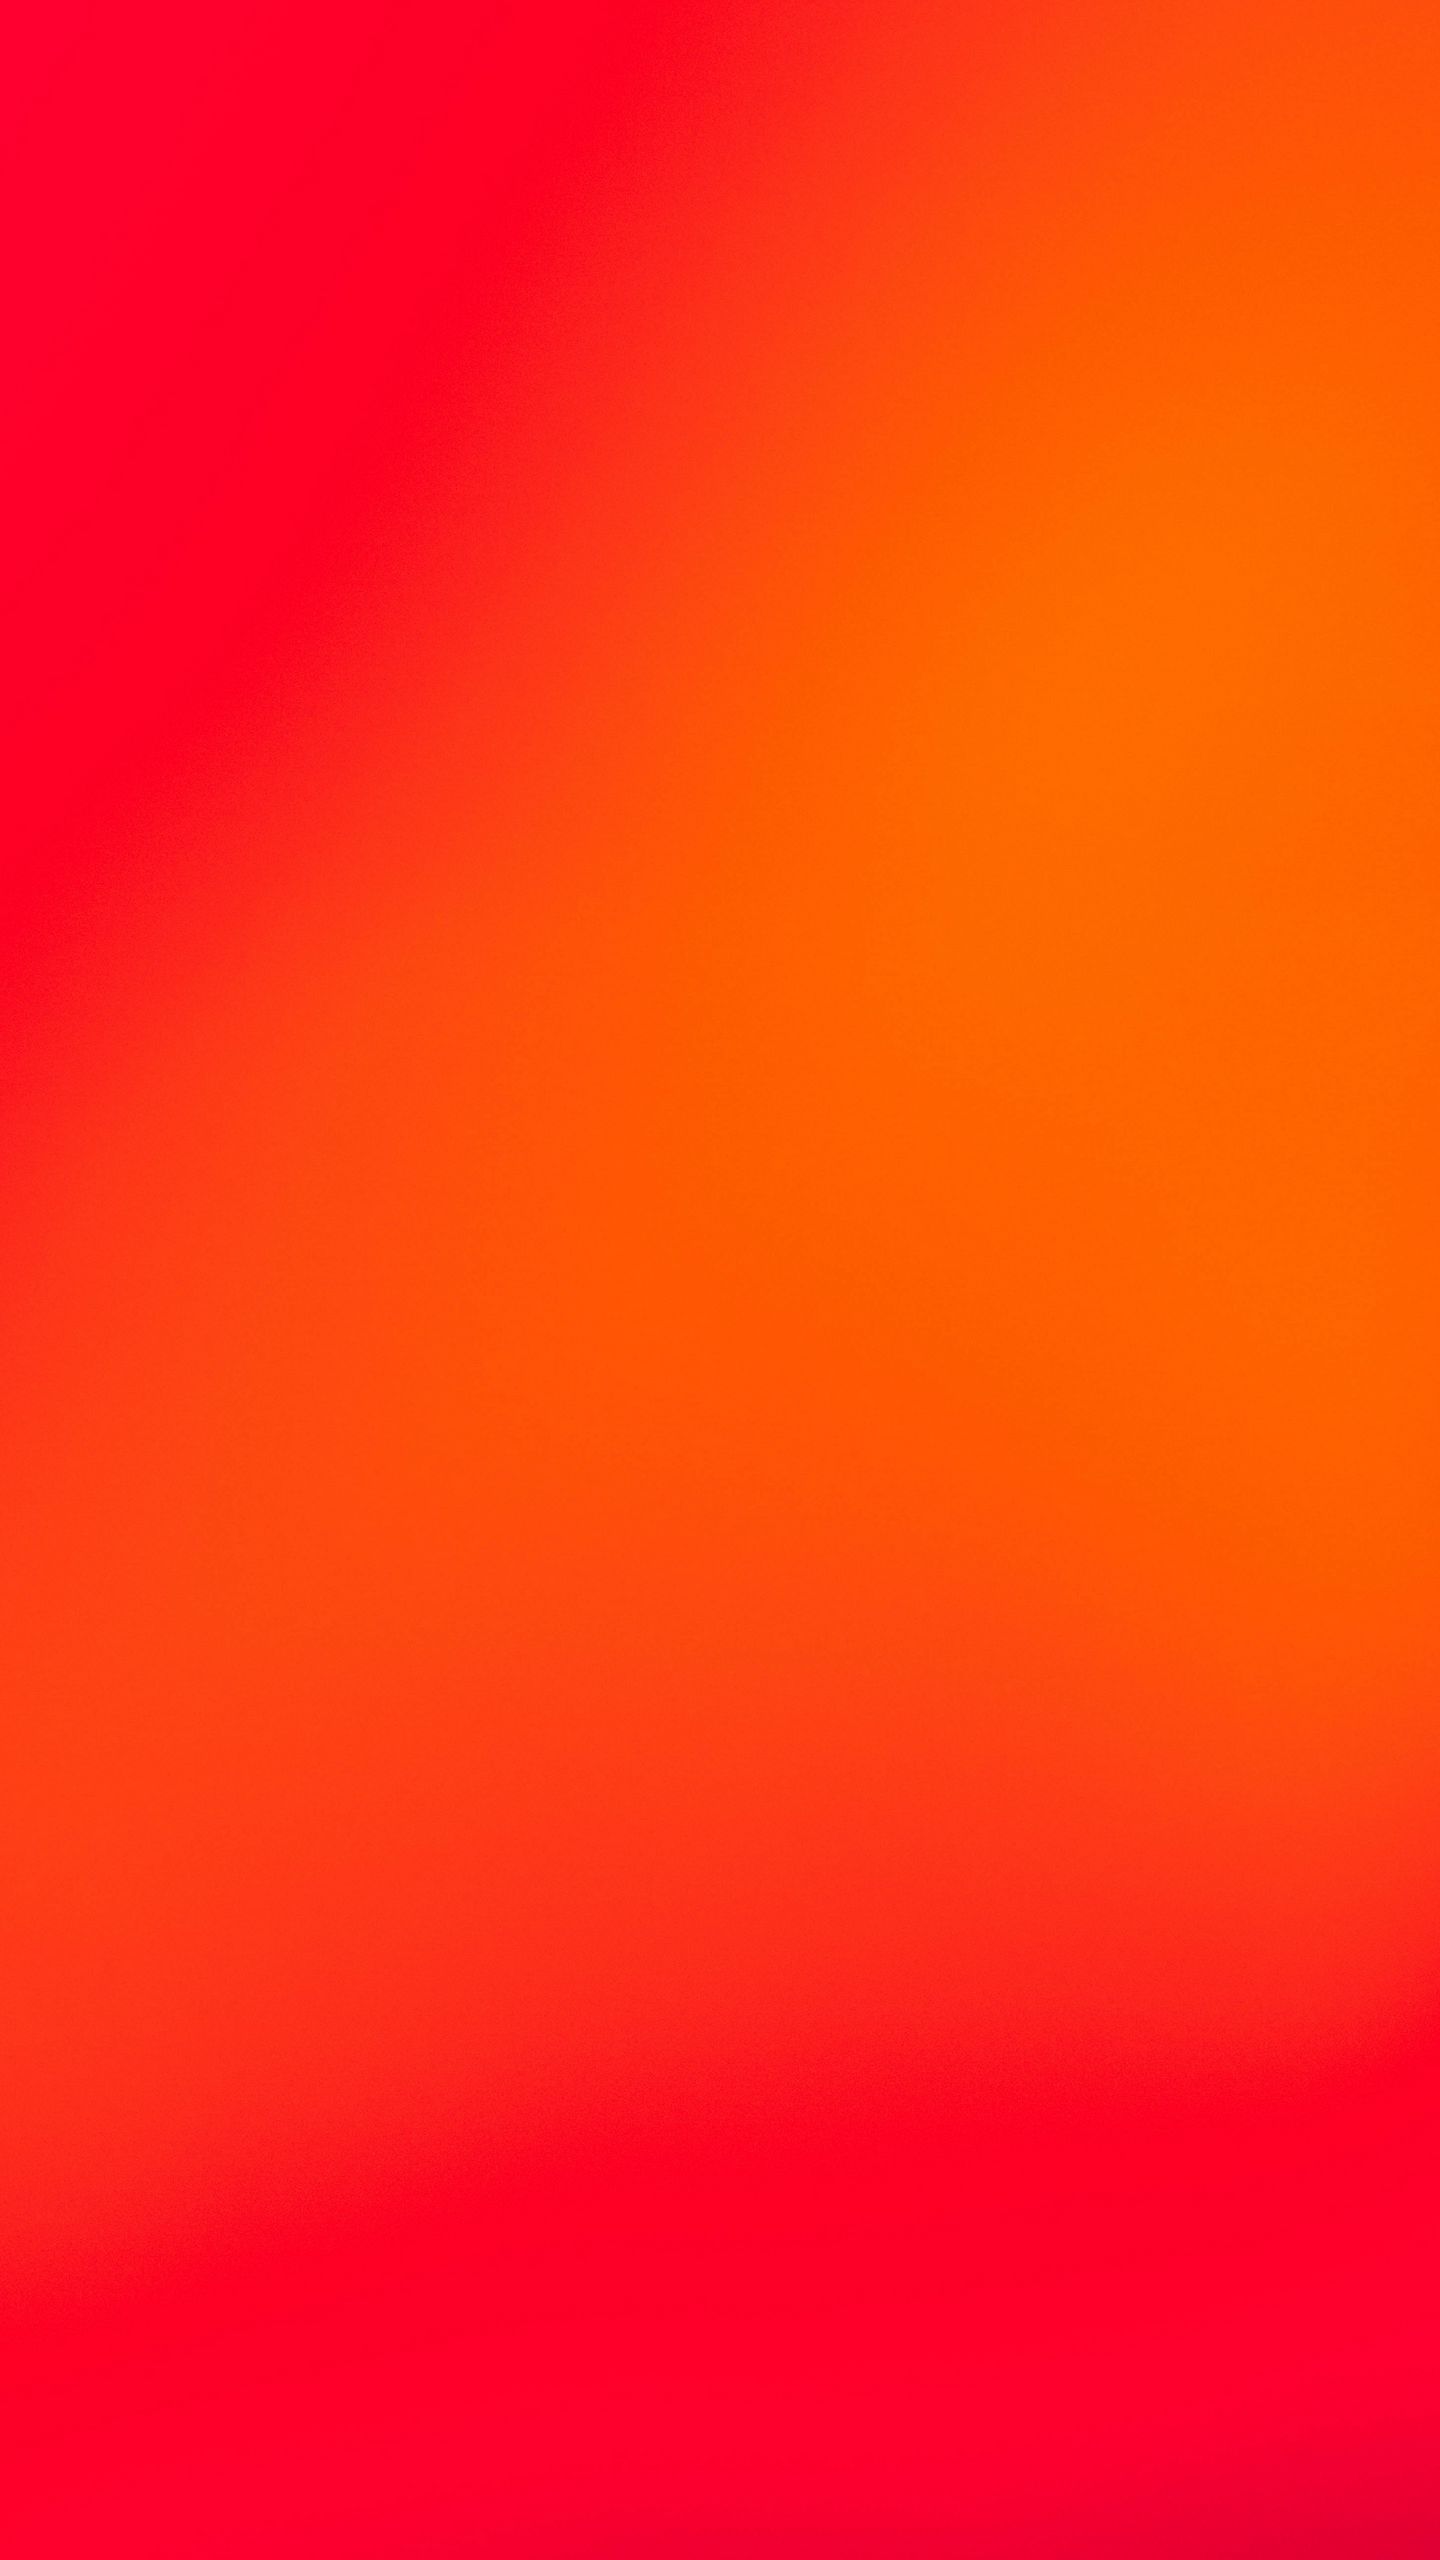 Màu đỏ và cam xen kẽ nhau tạo thành một gradient đầy mê hoặc. Hãy cùng ngắm nhìn hình ảnh và đắm chìm trong sự ấn tượng của sự pha trộn này. Hình ảnh khiến người xem không thể rời mắt.